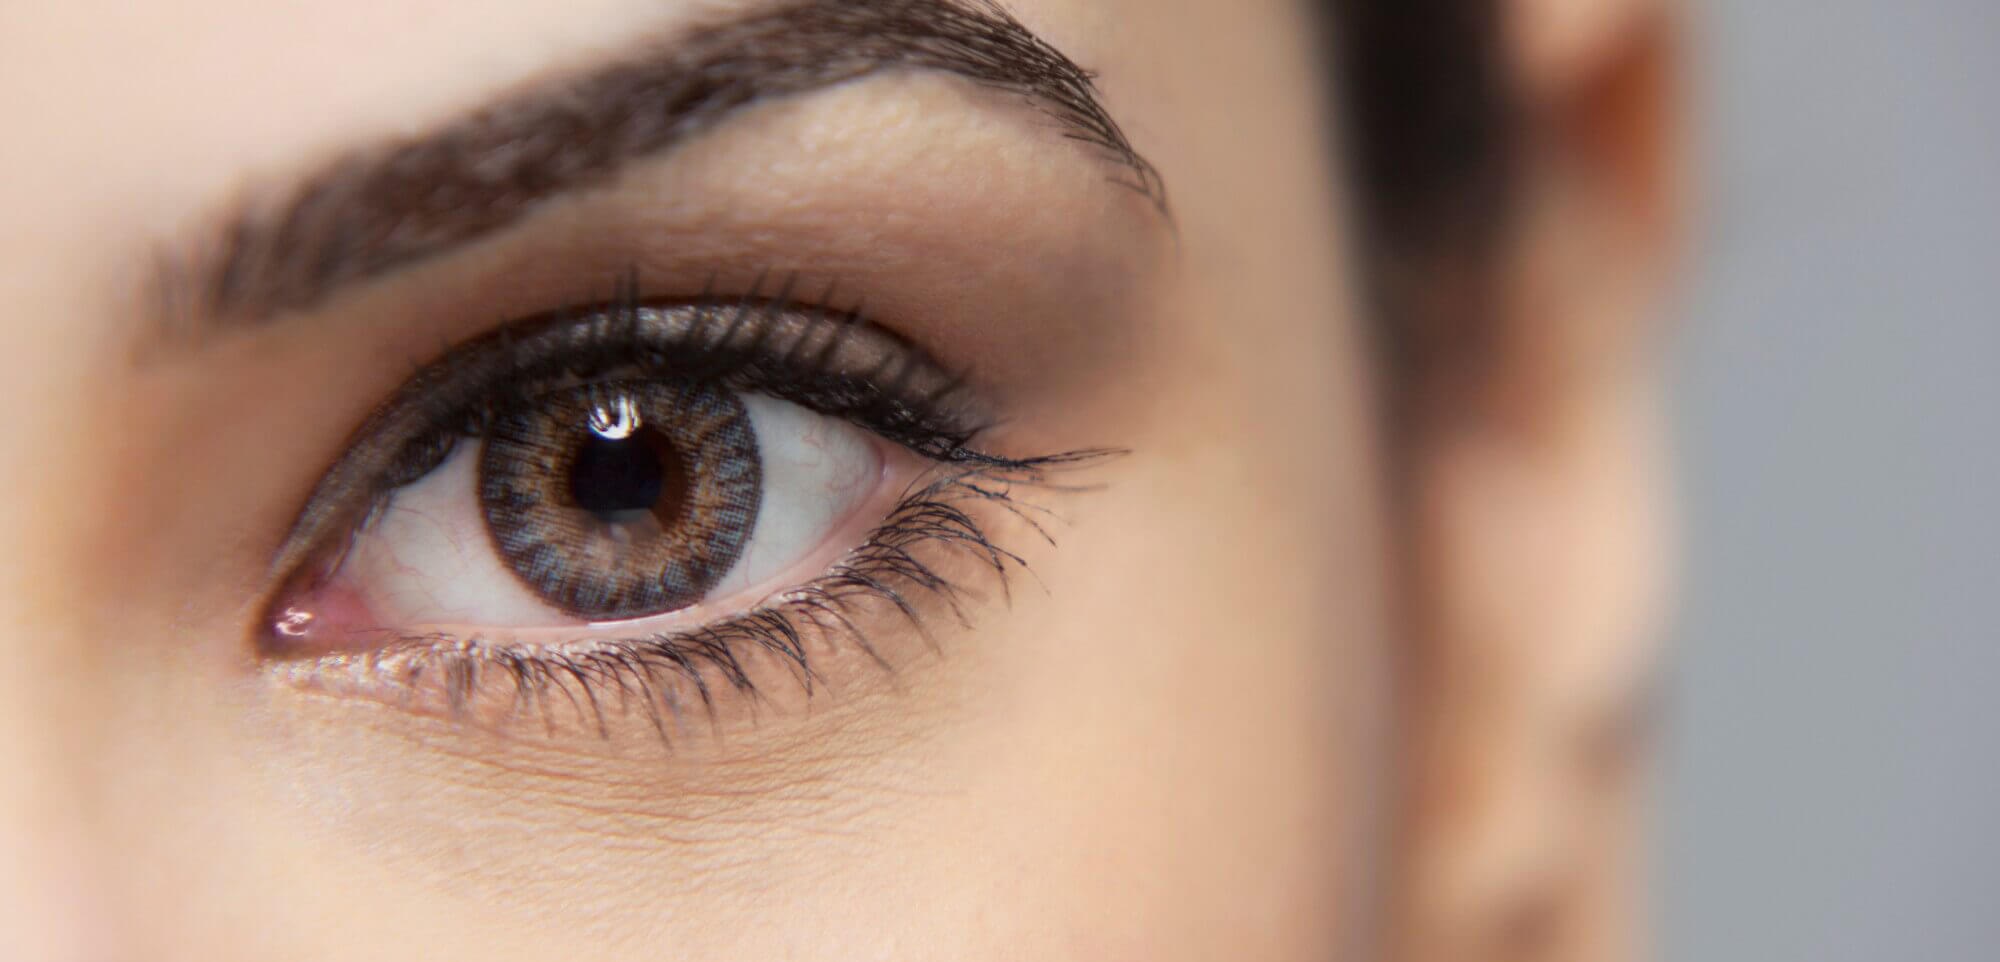 لیزیک چشم - شماره چشم برای عمل لیزیک